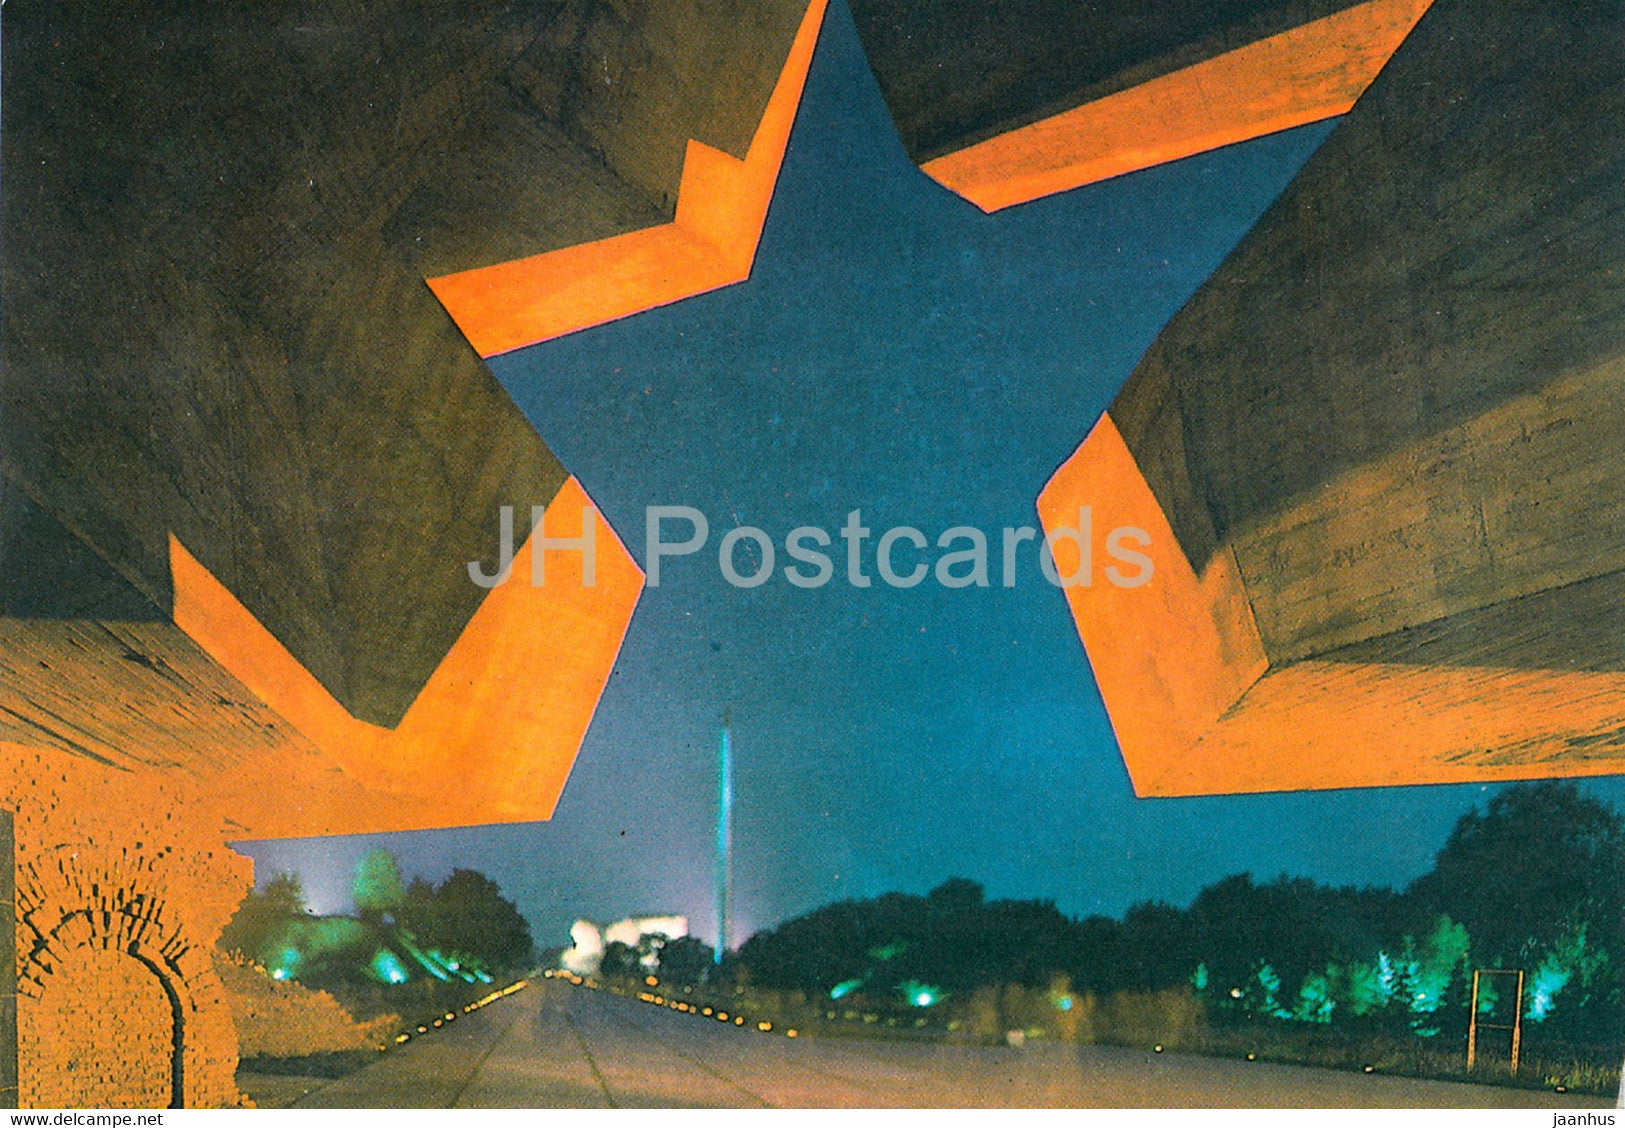 Brest Fortress - Central Entrance - 1984 - Belarus USSR - unused - JH Postcards